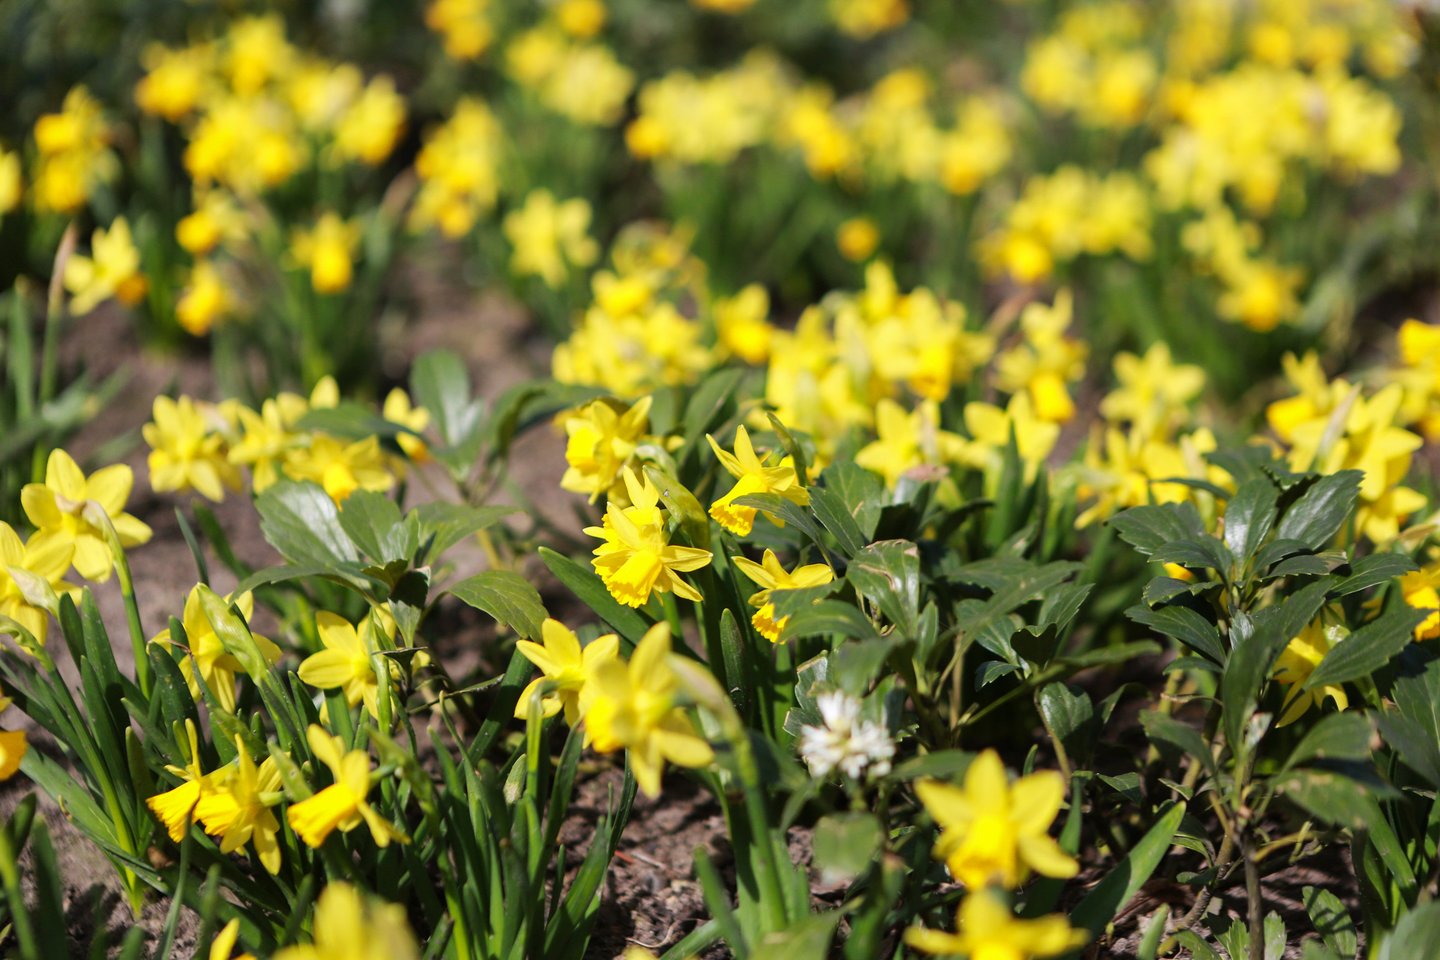 Laisvės alėjoje jau ketvirtą pavasarį sužydintys narcizai džiugina kauniečius ir miesto svečius savo geltona spalva.<br>G.Bitvinsko nuotr.